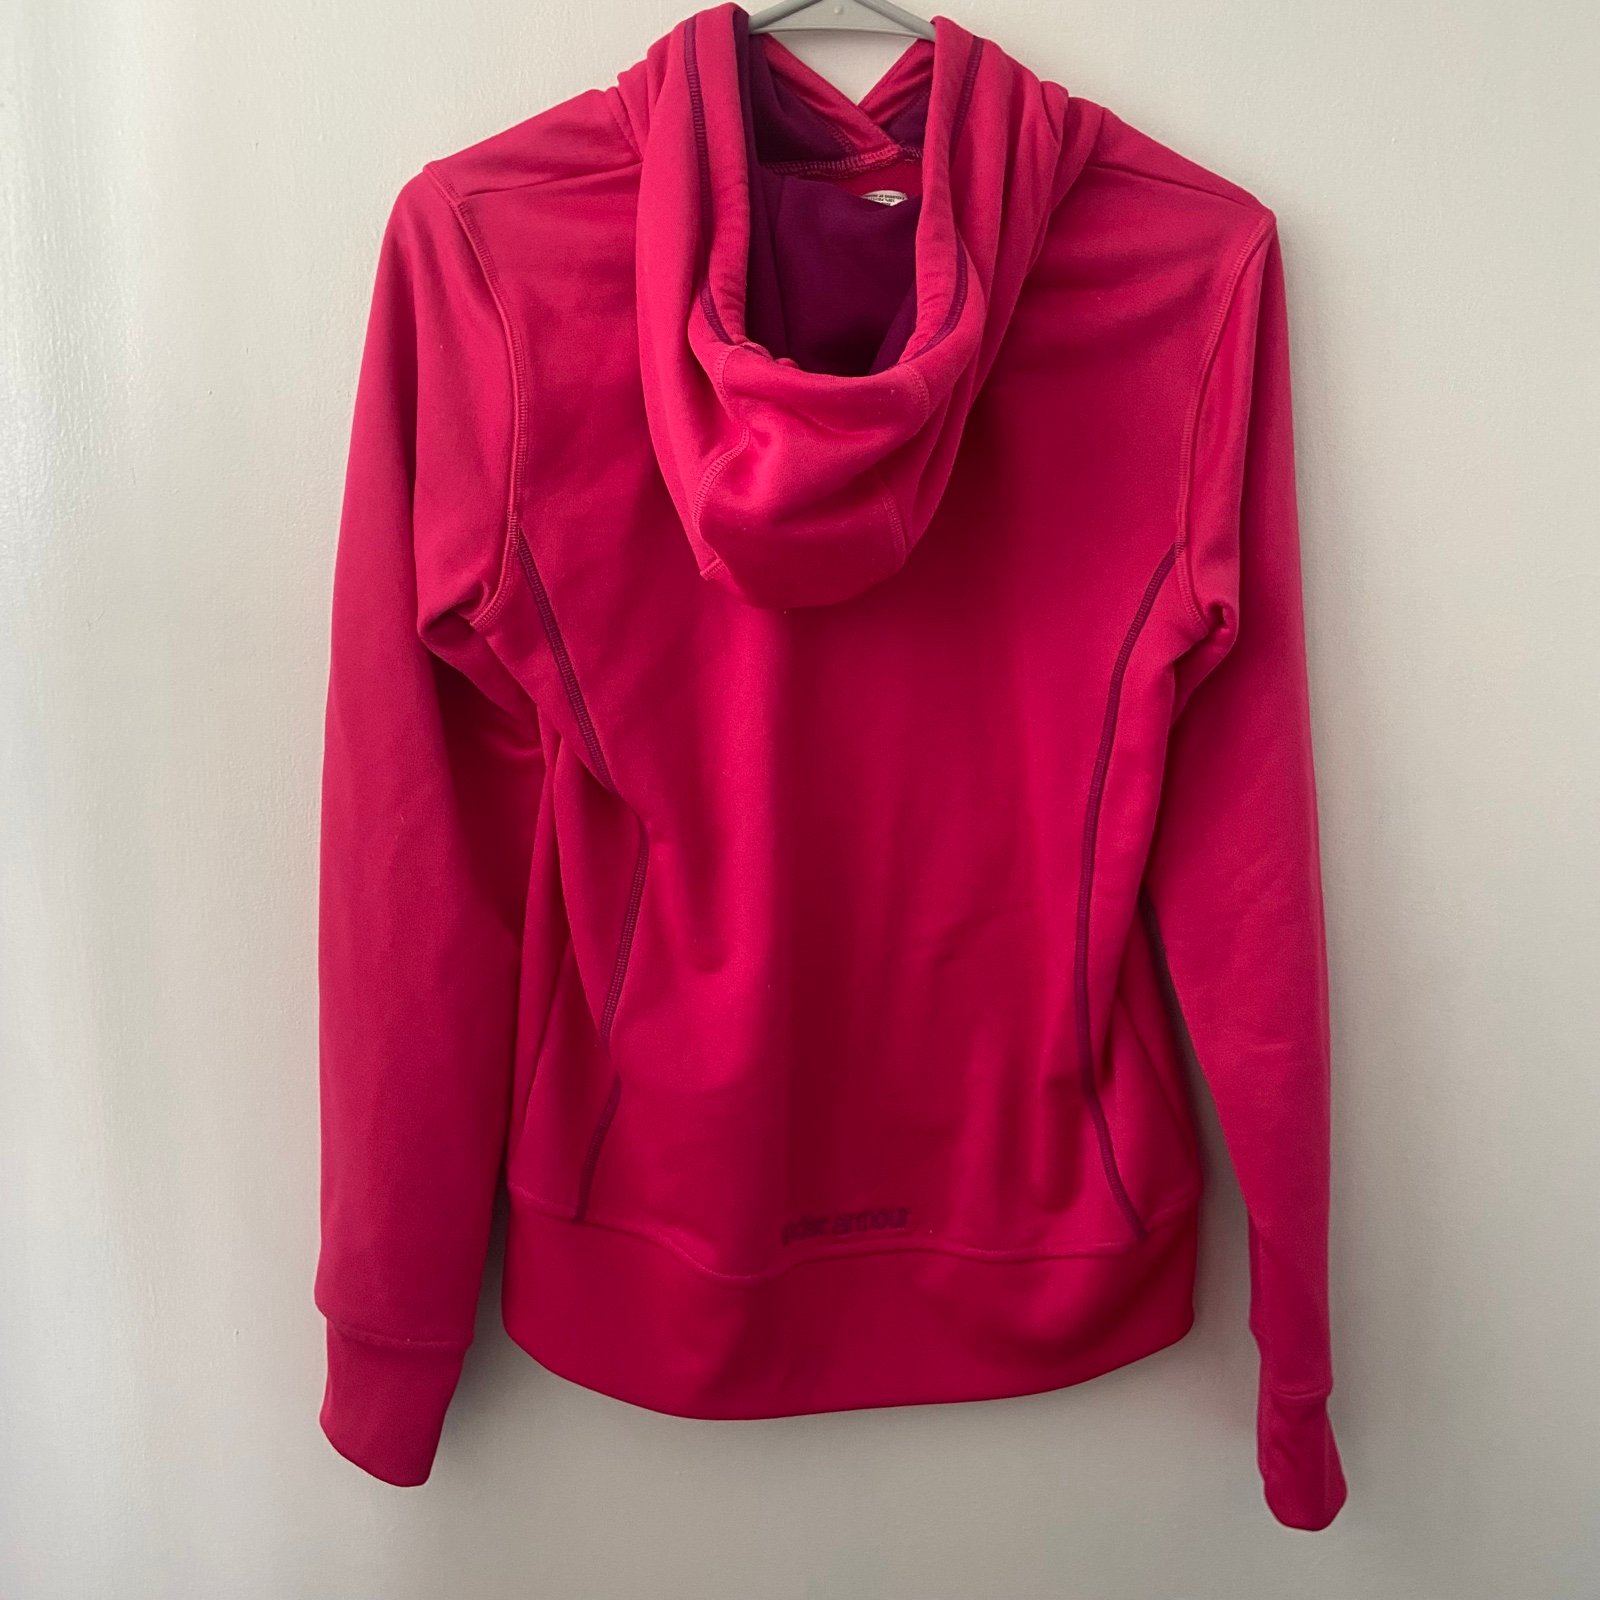 Perfect Under armour pink hoodie sweatshirt n4ihWjFi8 Wholesale